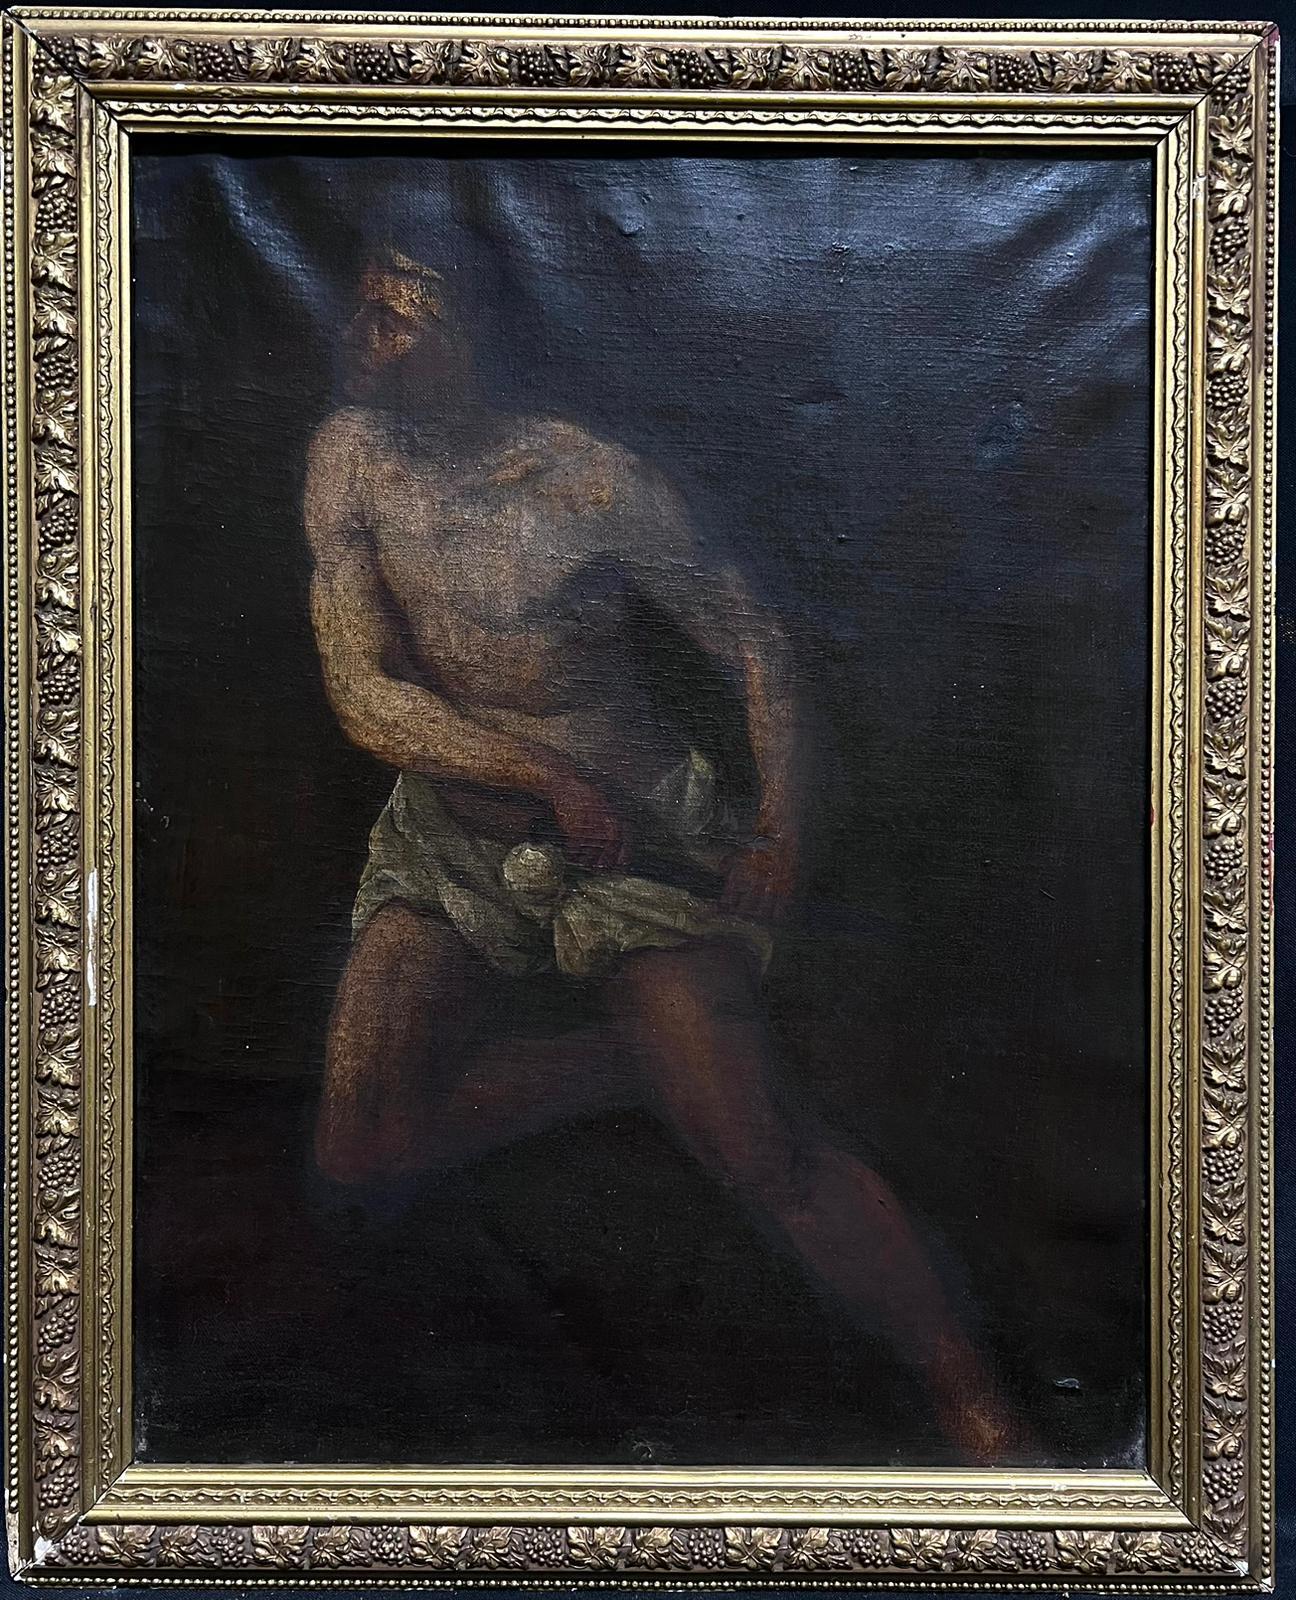 Italienischer alter Meister des frühen 17. Jahrhunderts, halbakt, Mann mit Dagger, Ölgemälde